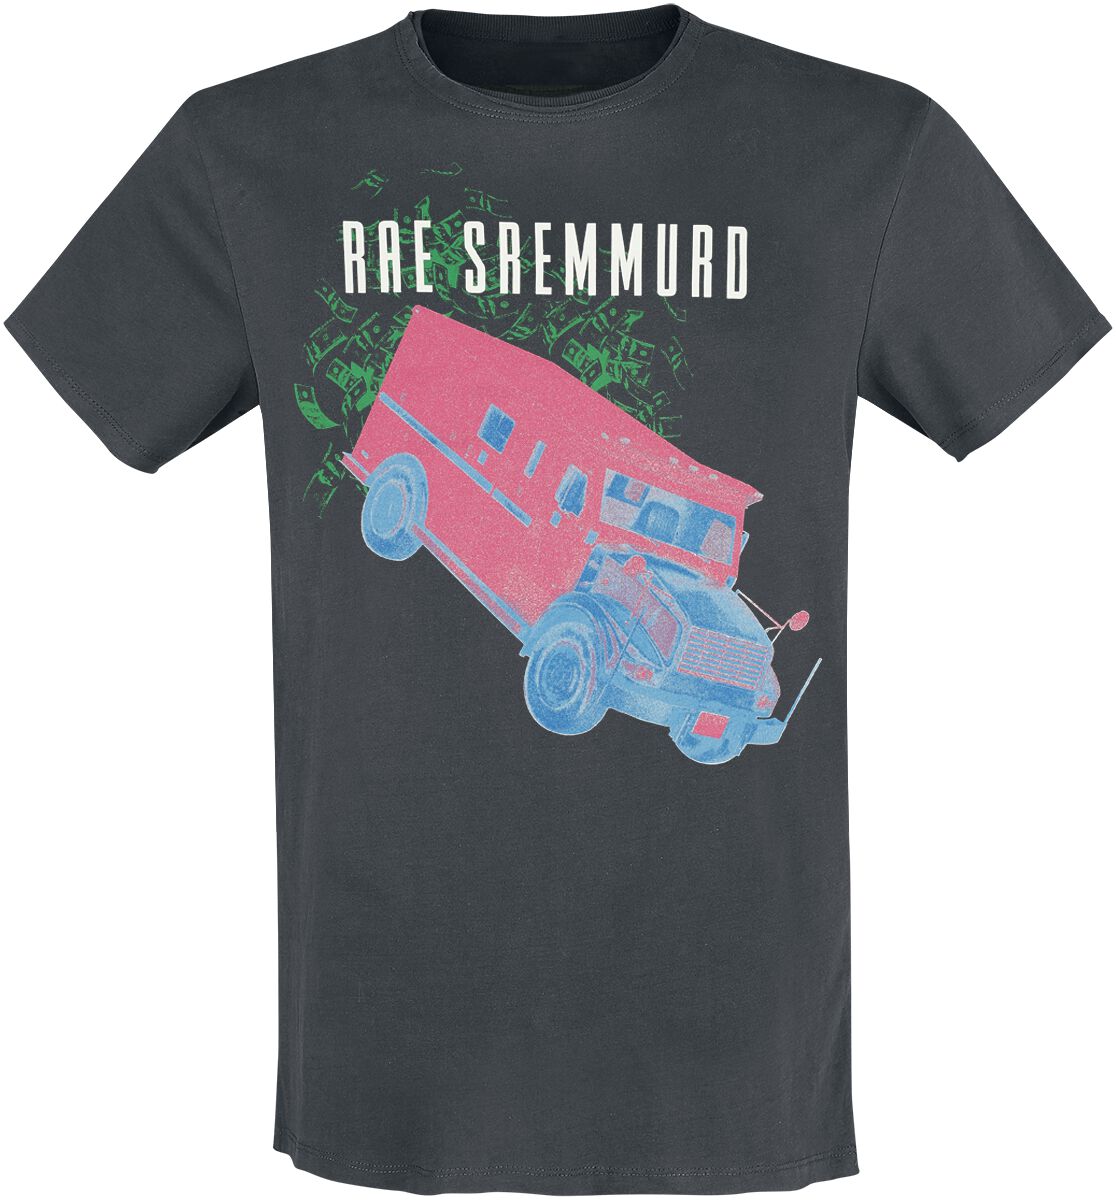 Rae Sremmurd T-Shirt - Amplified Collection - Cash Heist - S bis 3XL - für Männer - Größe XXL - charcoal  - Lizenziertes Merchandise!